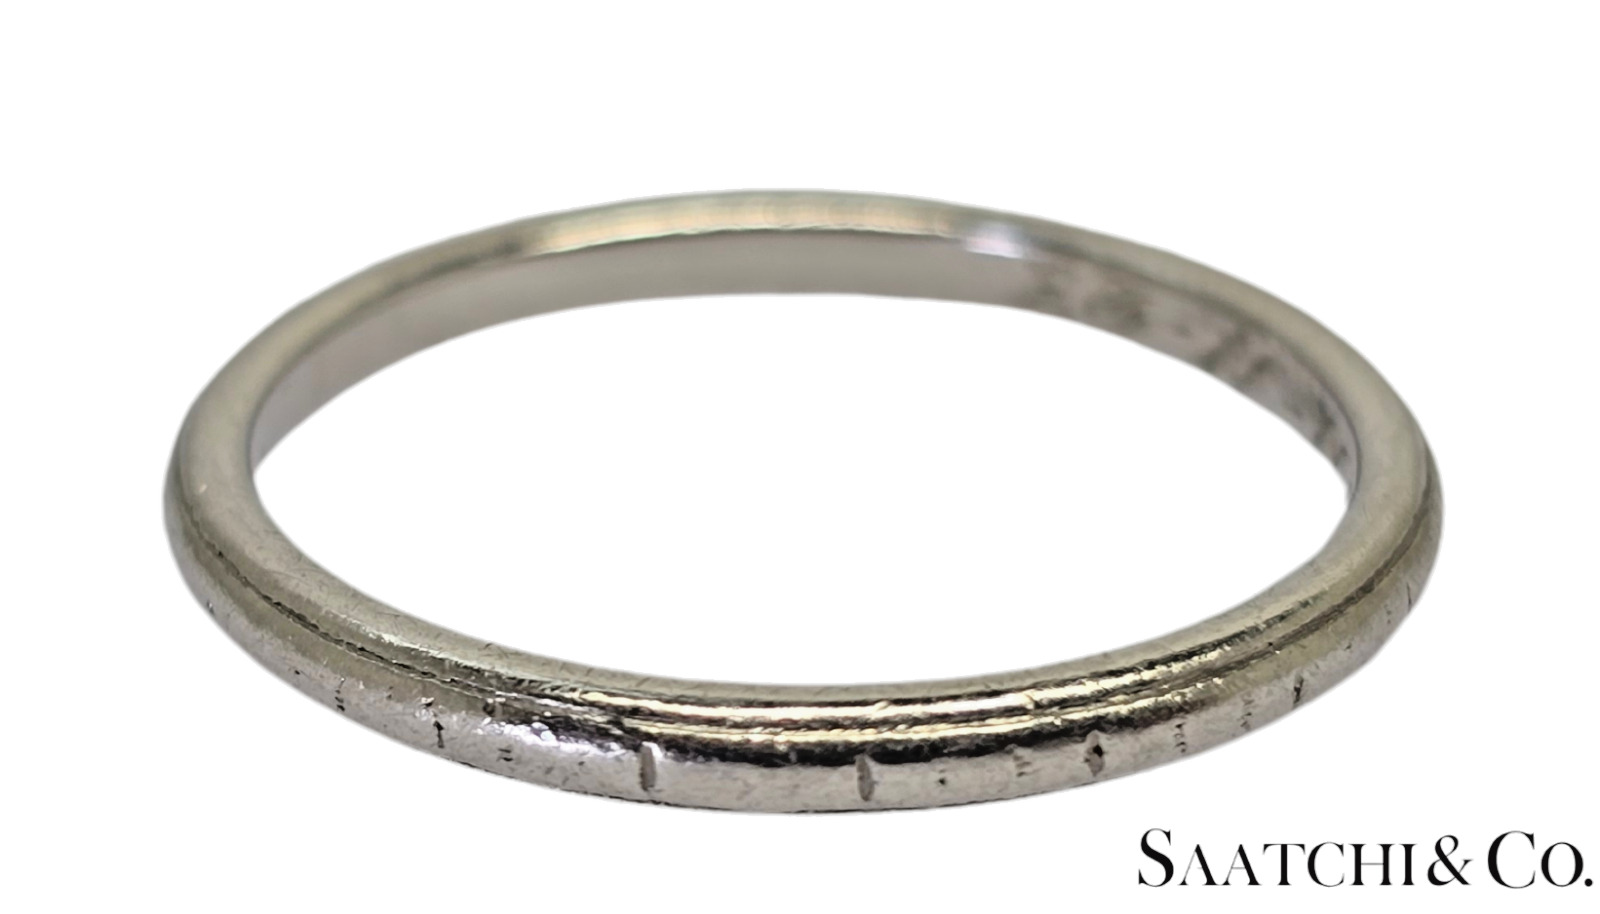 Platinum (950) - Old - Vintage - Engraved Ring Band, 2.8 Grams, Size 7